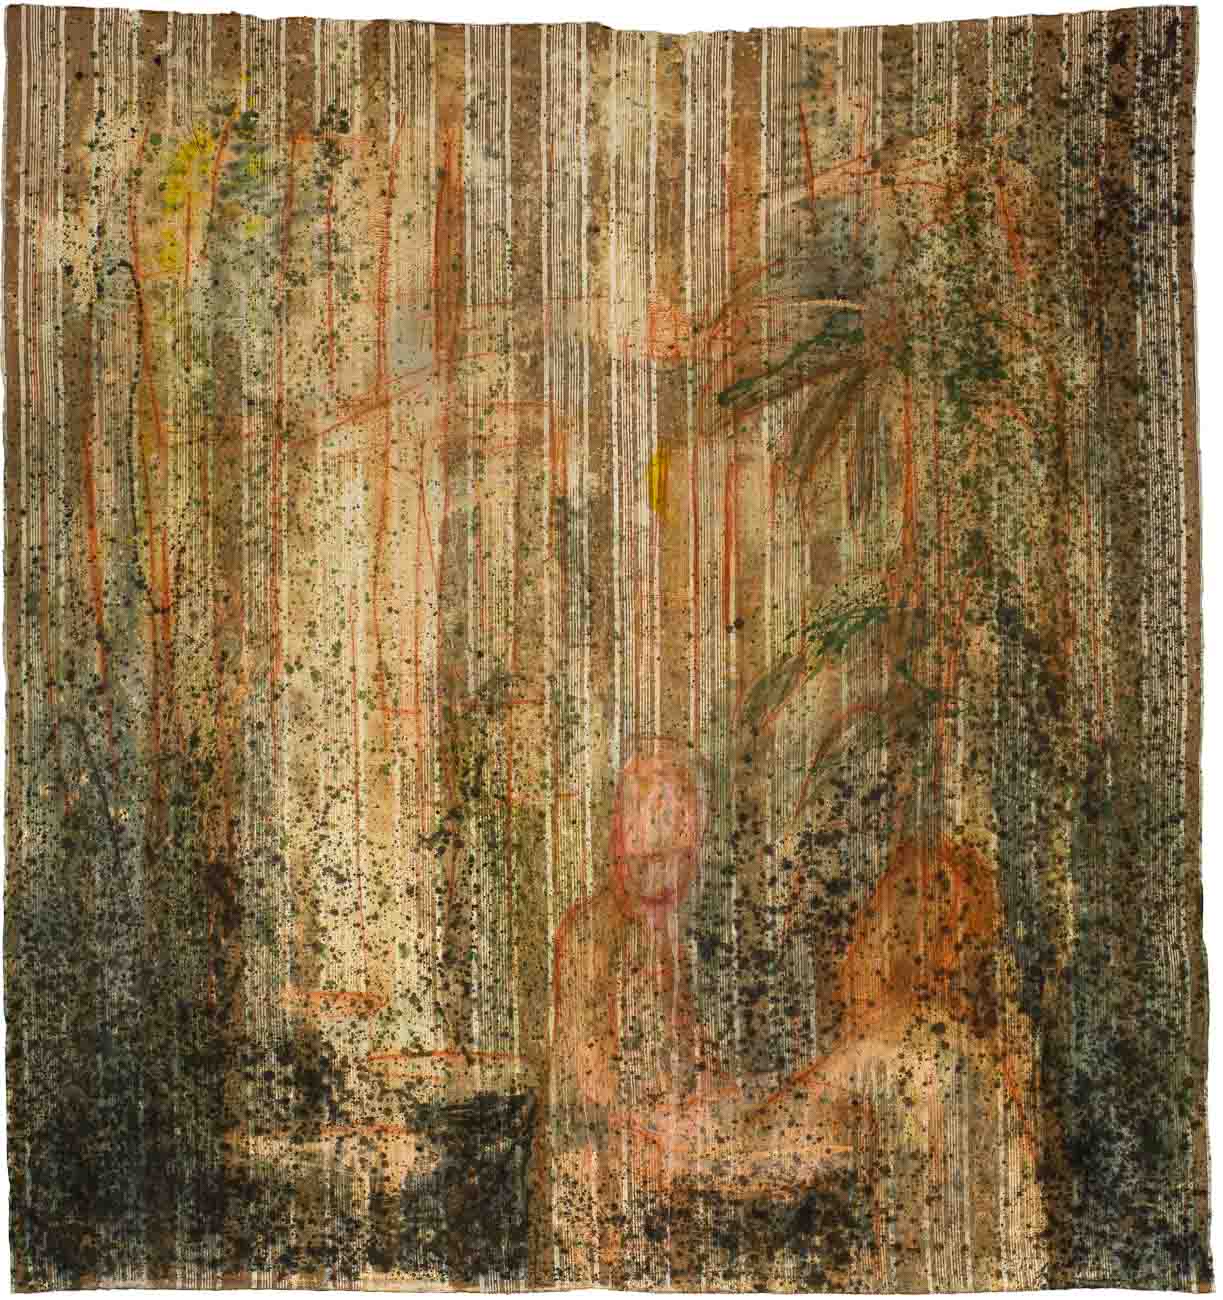 Chiara Lera - La Venta, 212 x 190 cm, tecnica mista su tela di materasso, 2011